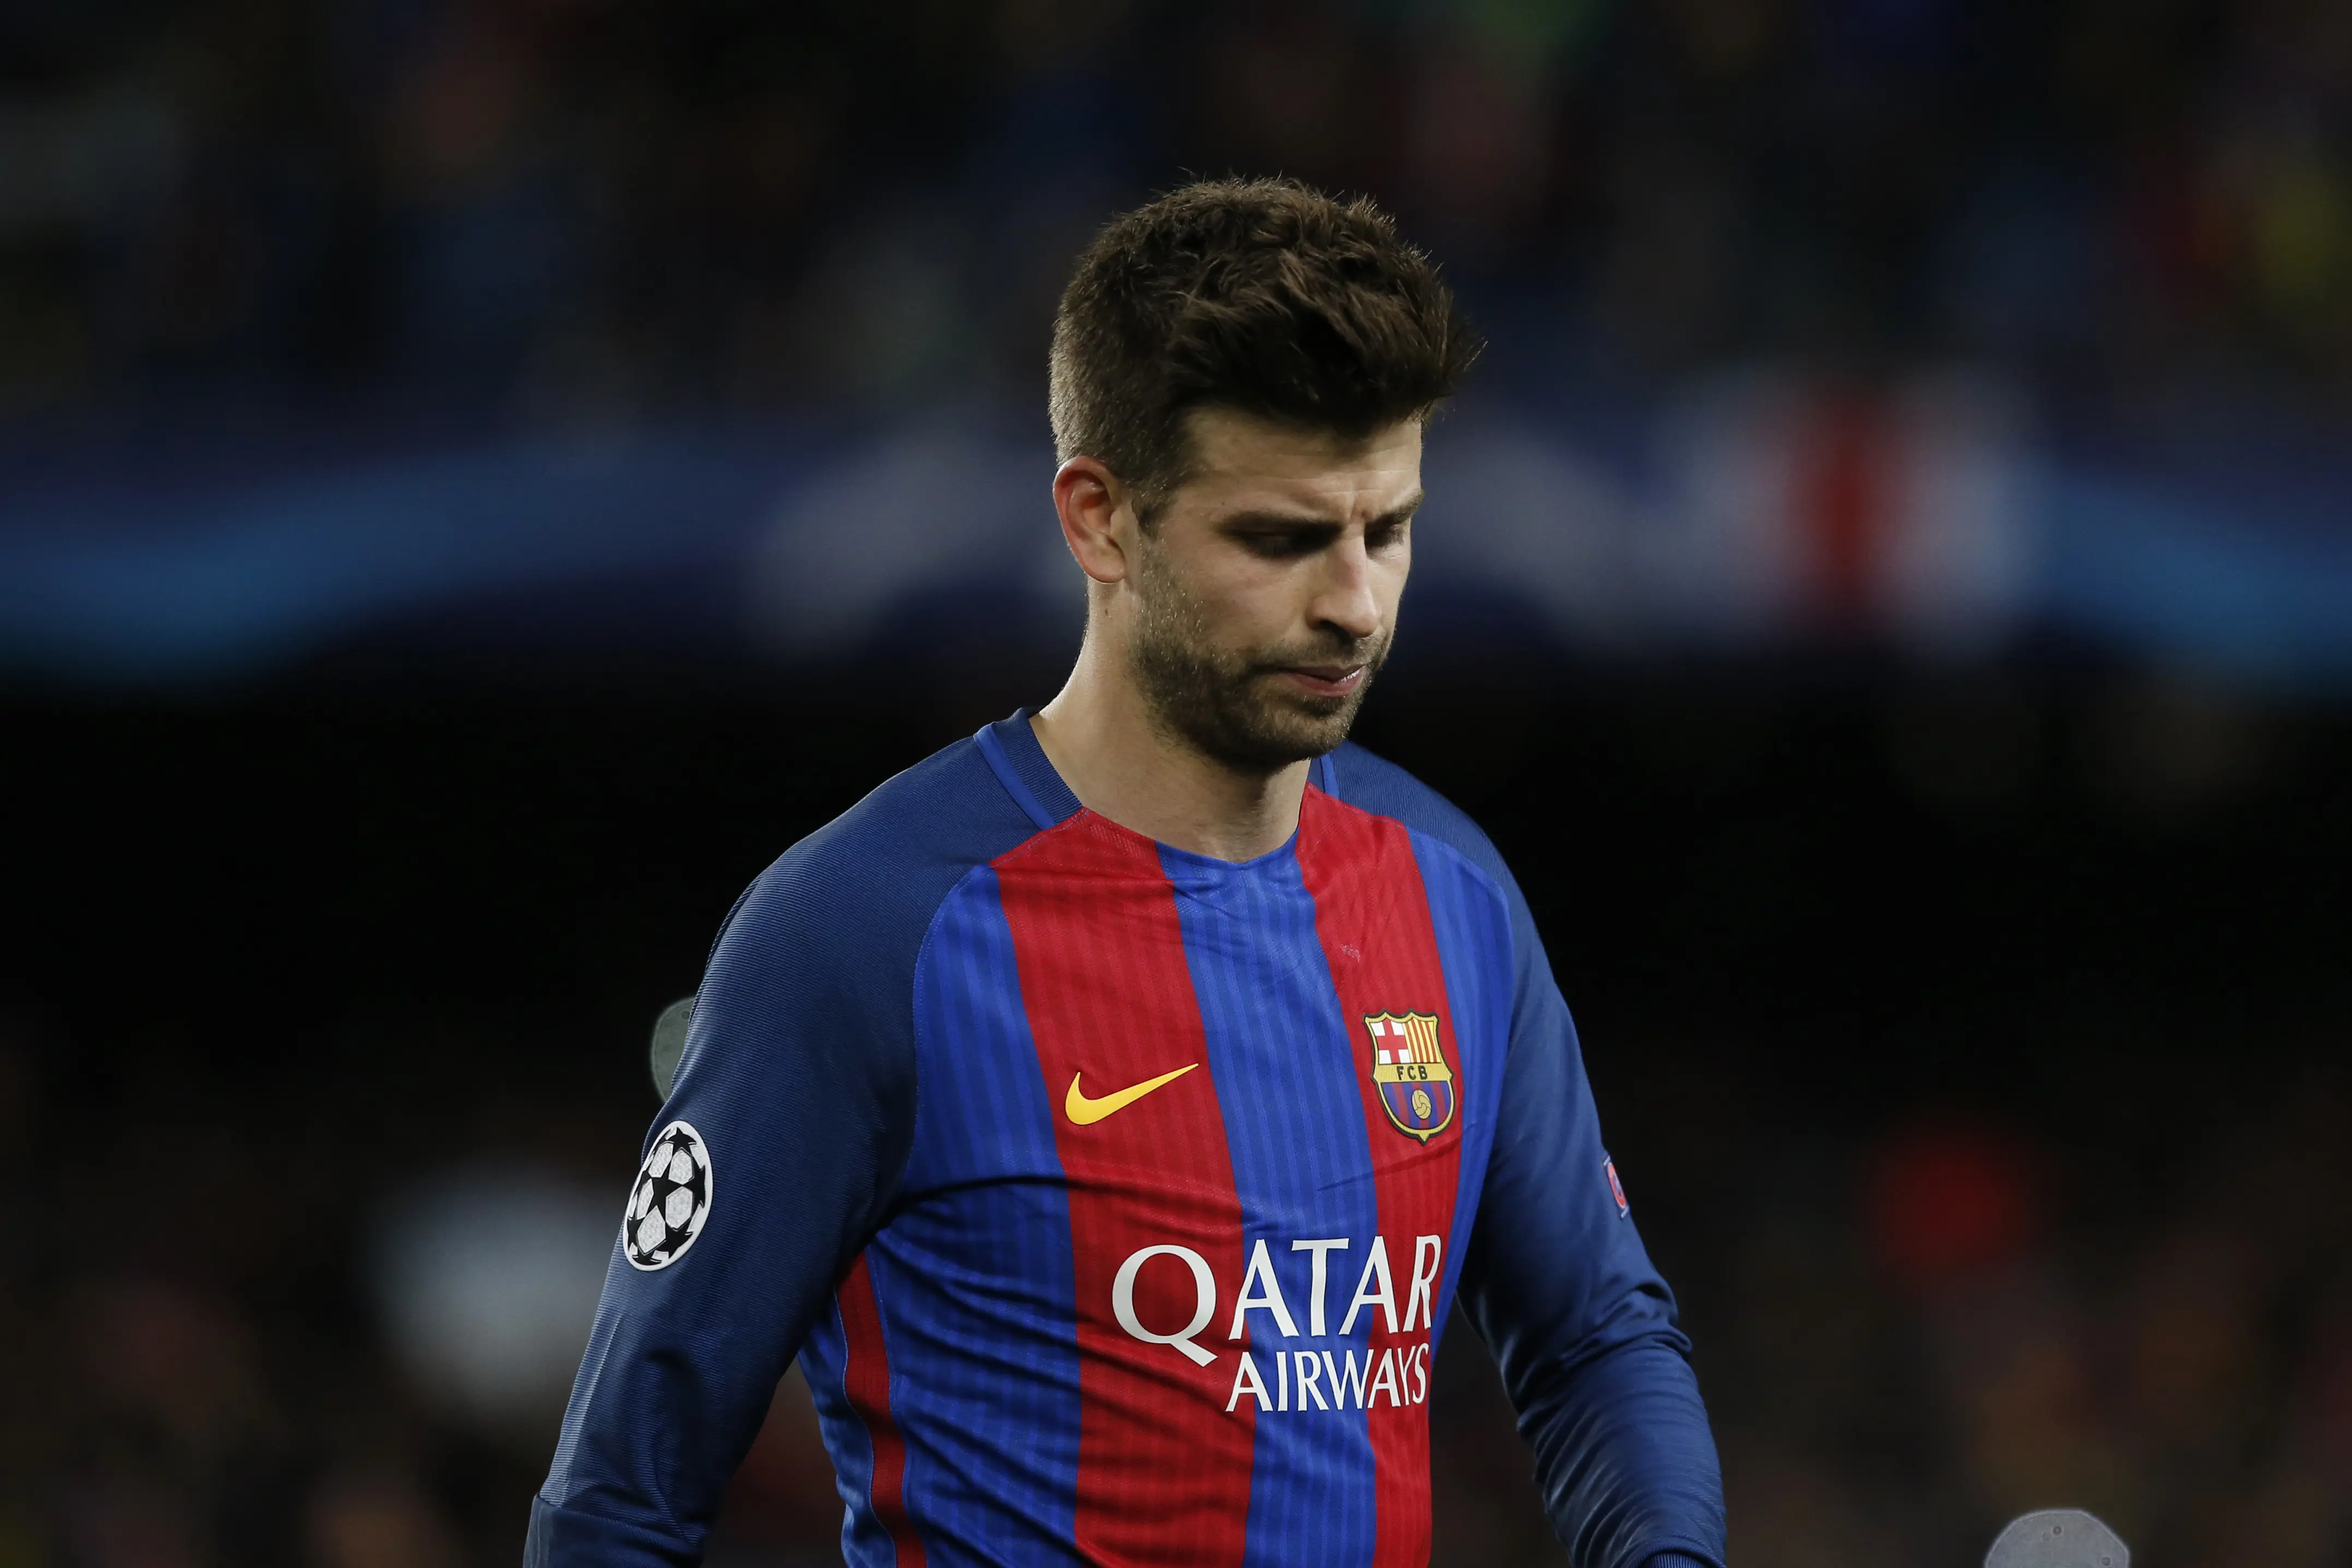 Gerard Pique kembali ke Barcelona setelah sempat memperkuat Manchester United. (AFP/Pau Barrena)